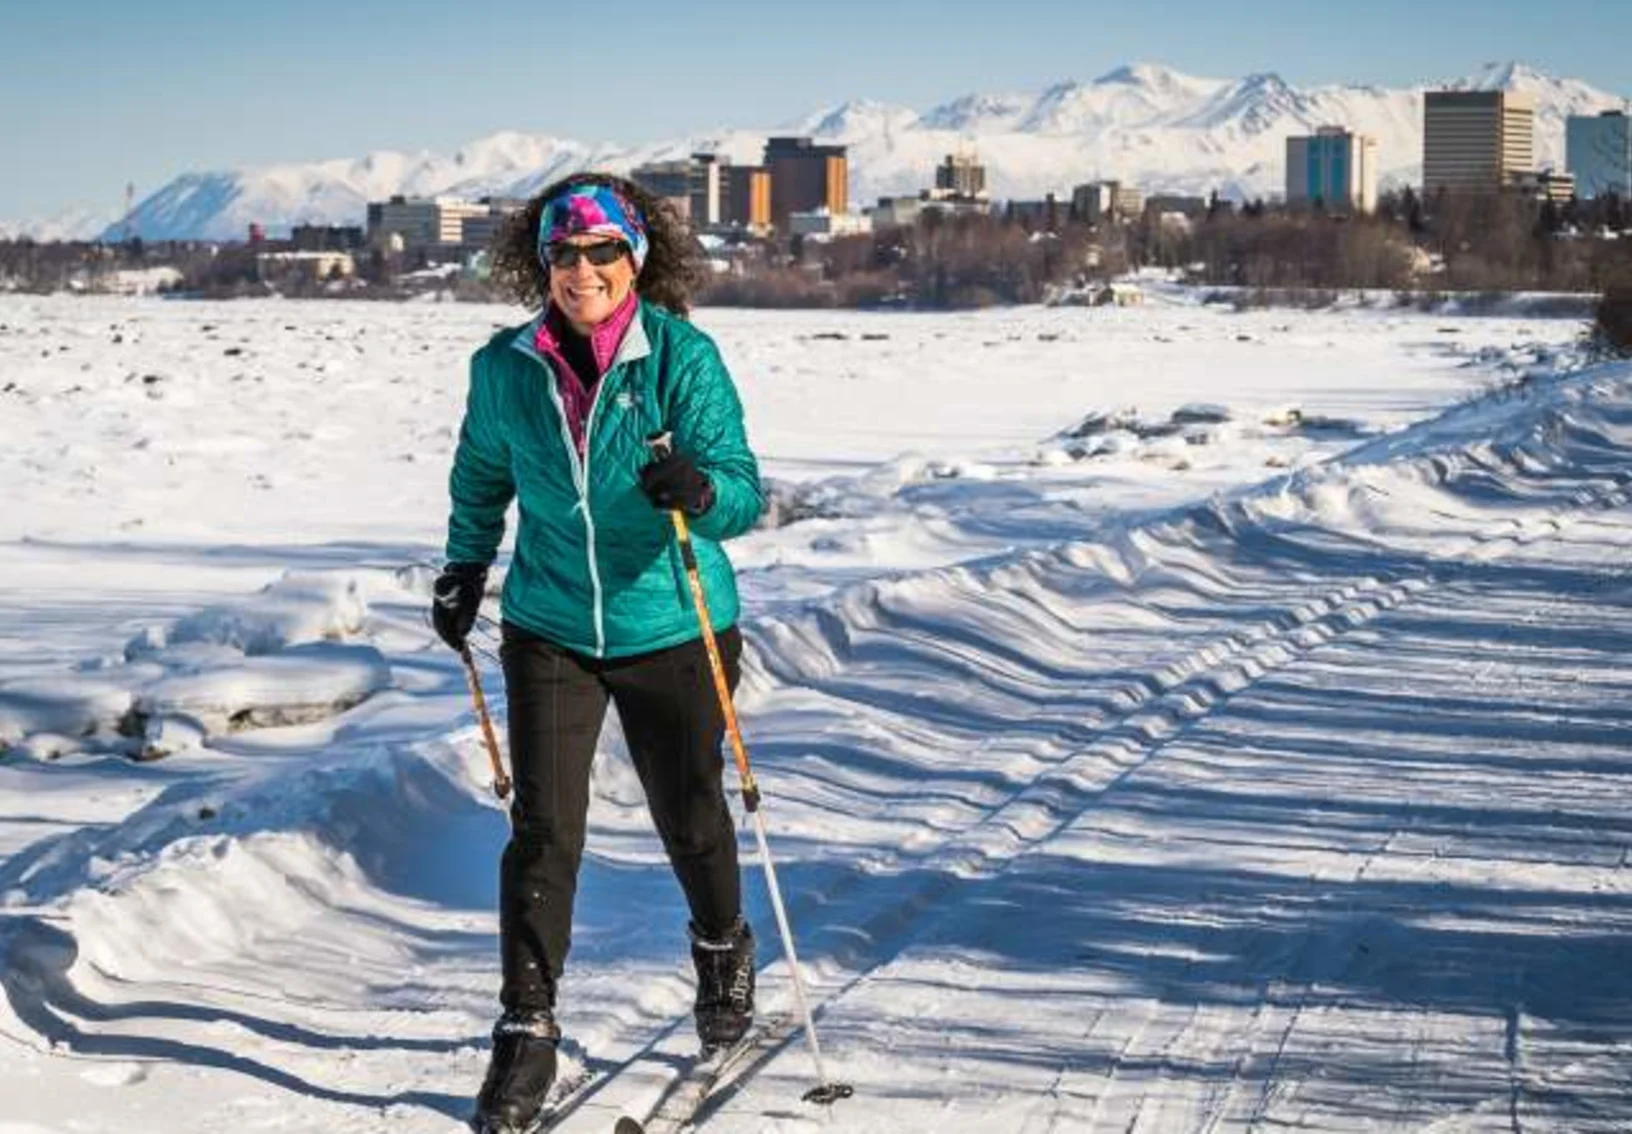 woman skiing